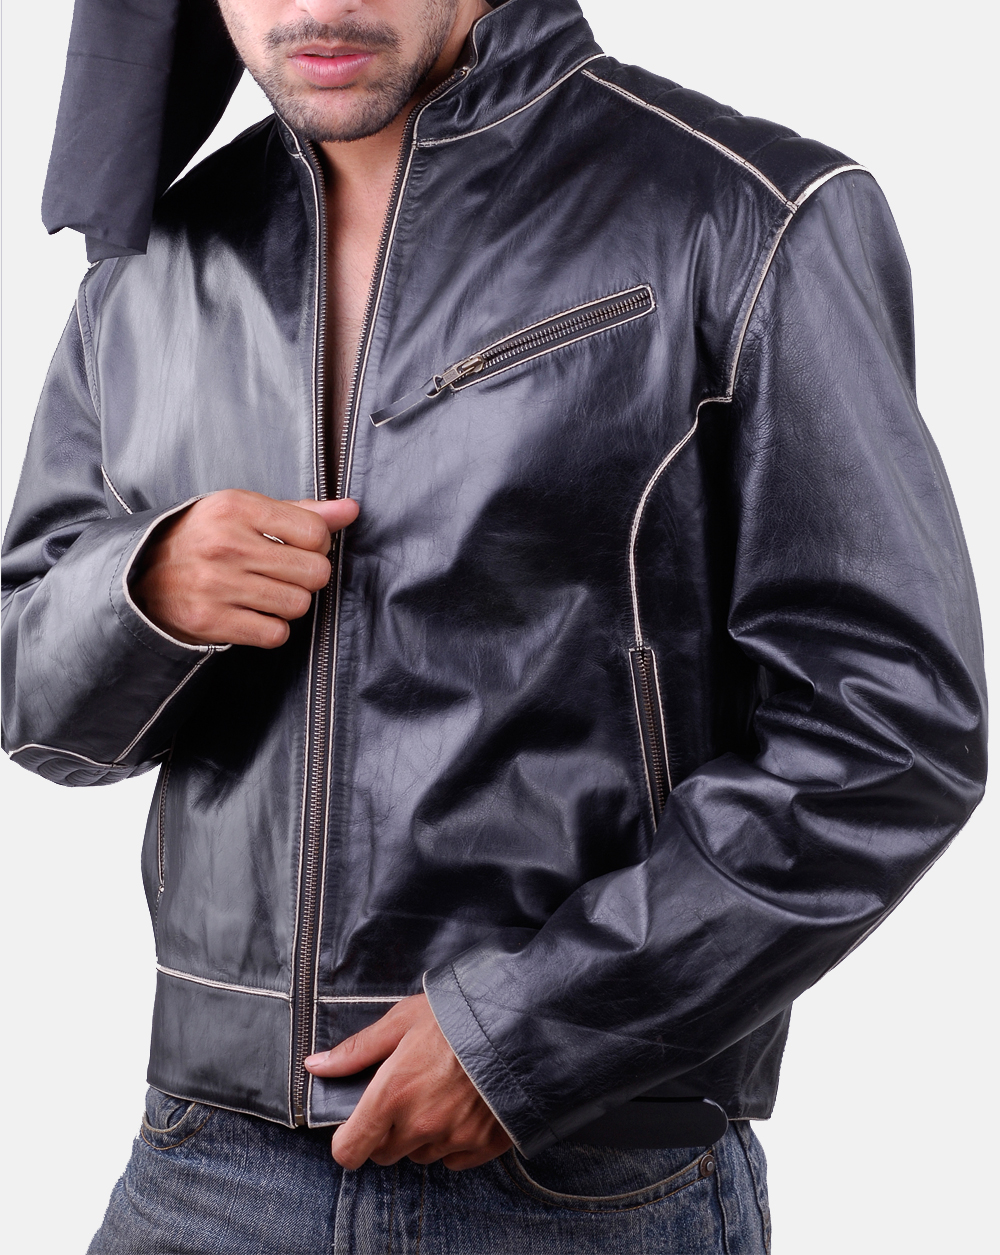 Arkansas moto leather jacket